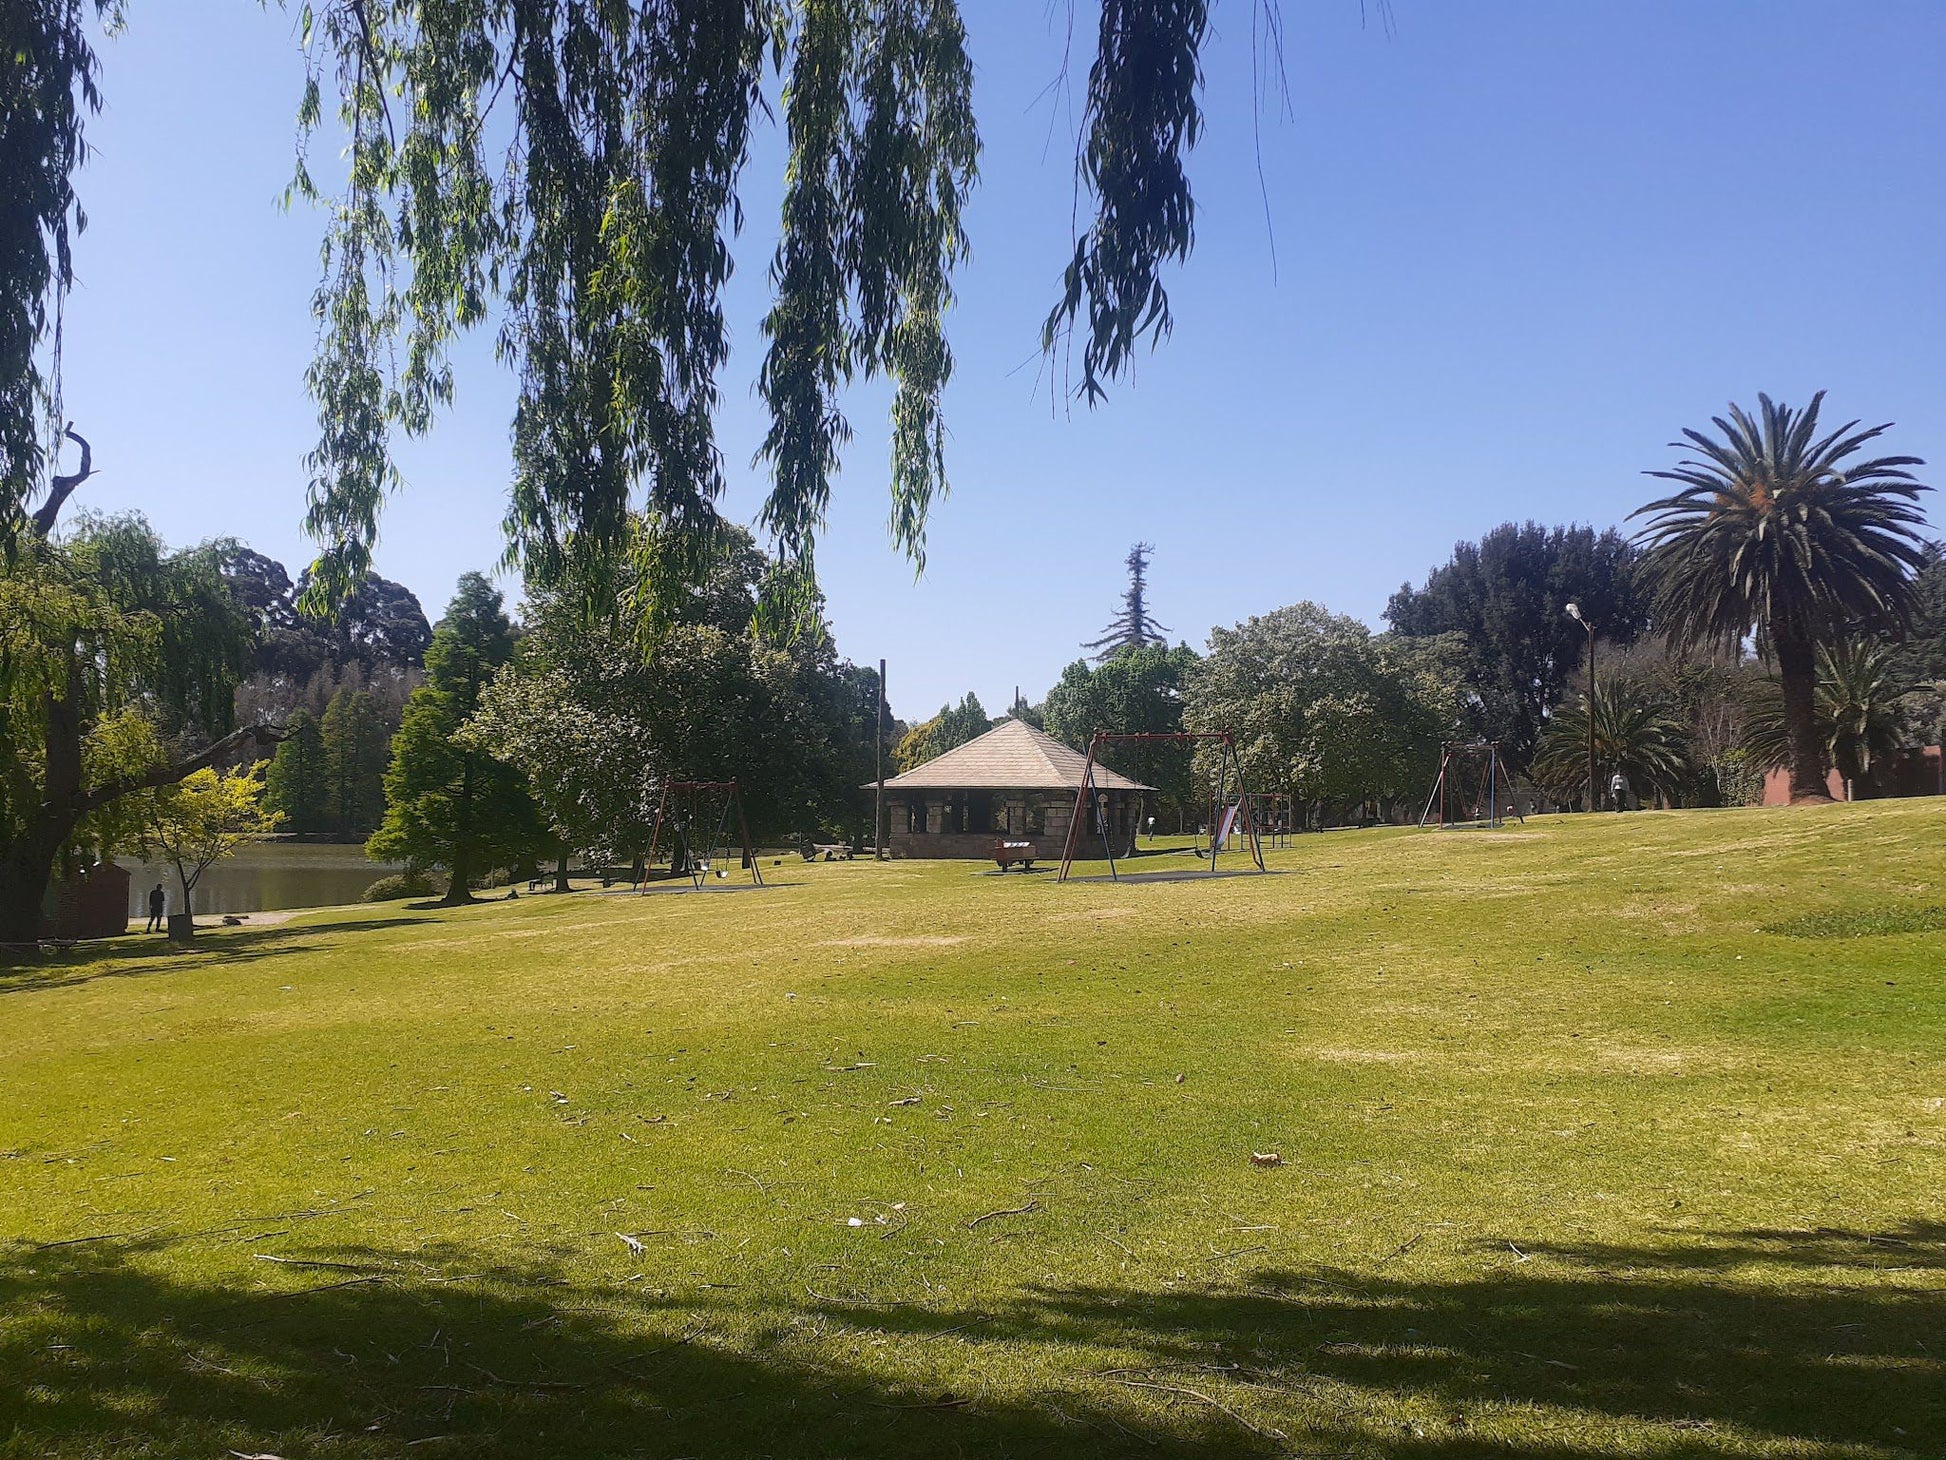  Rhodes Park